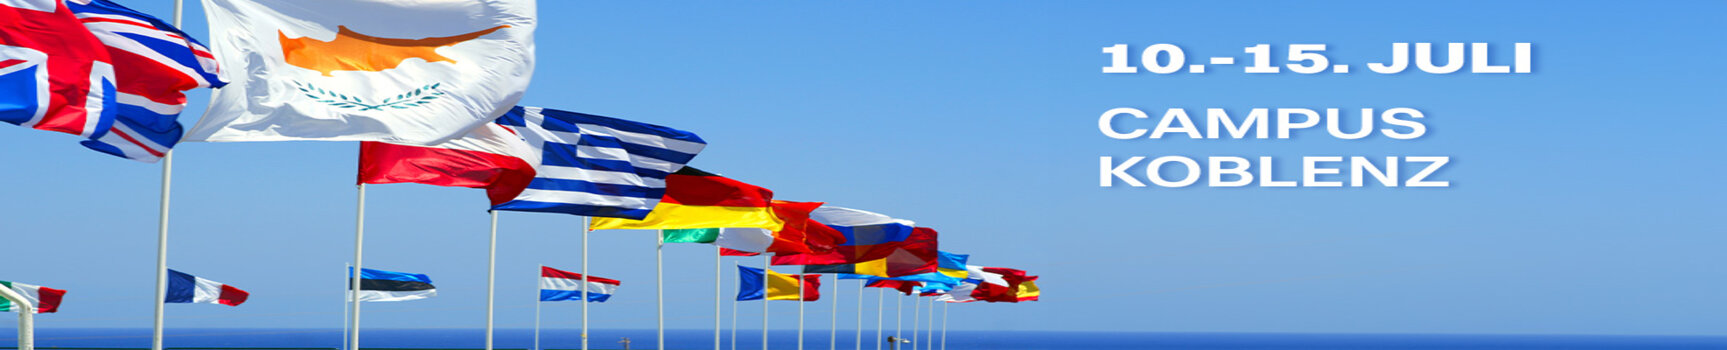 Flaggen von EU Mitgliedsstaaten vor blauem Himmel